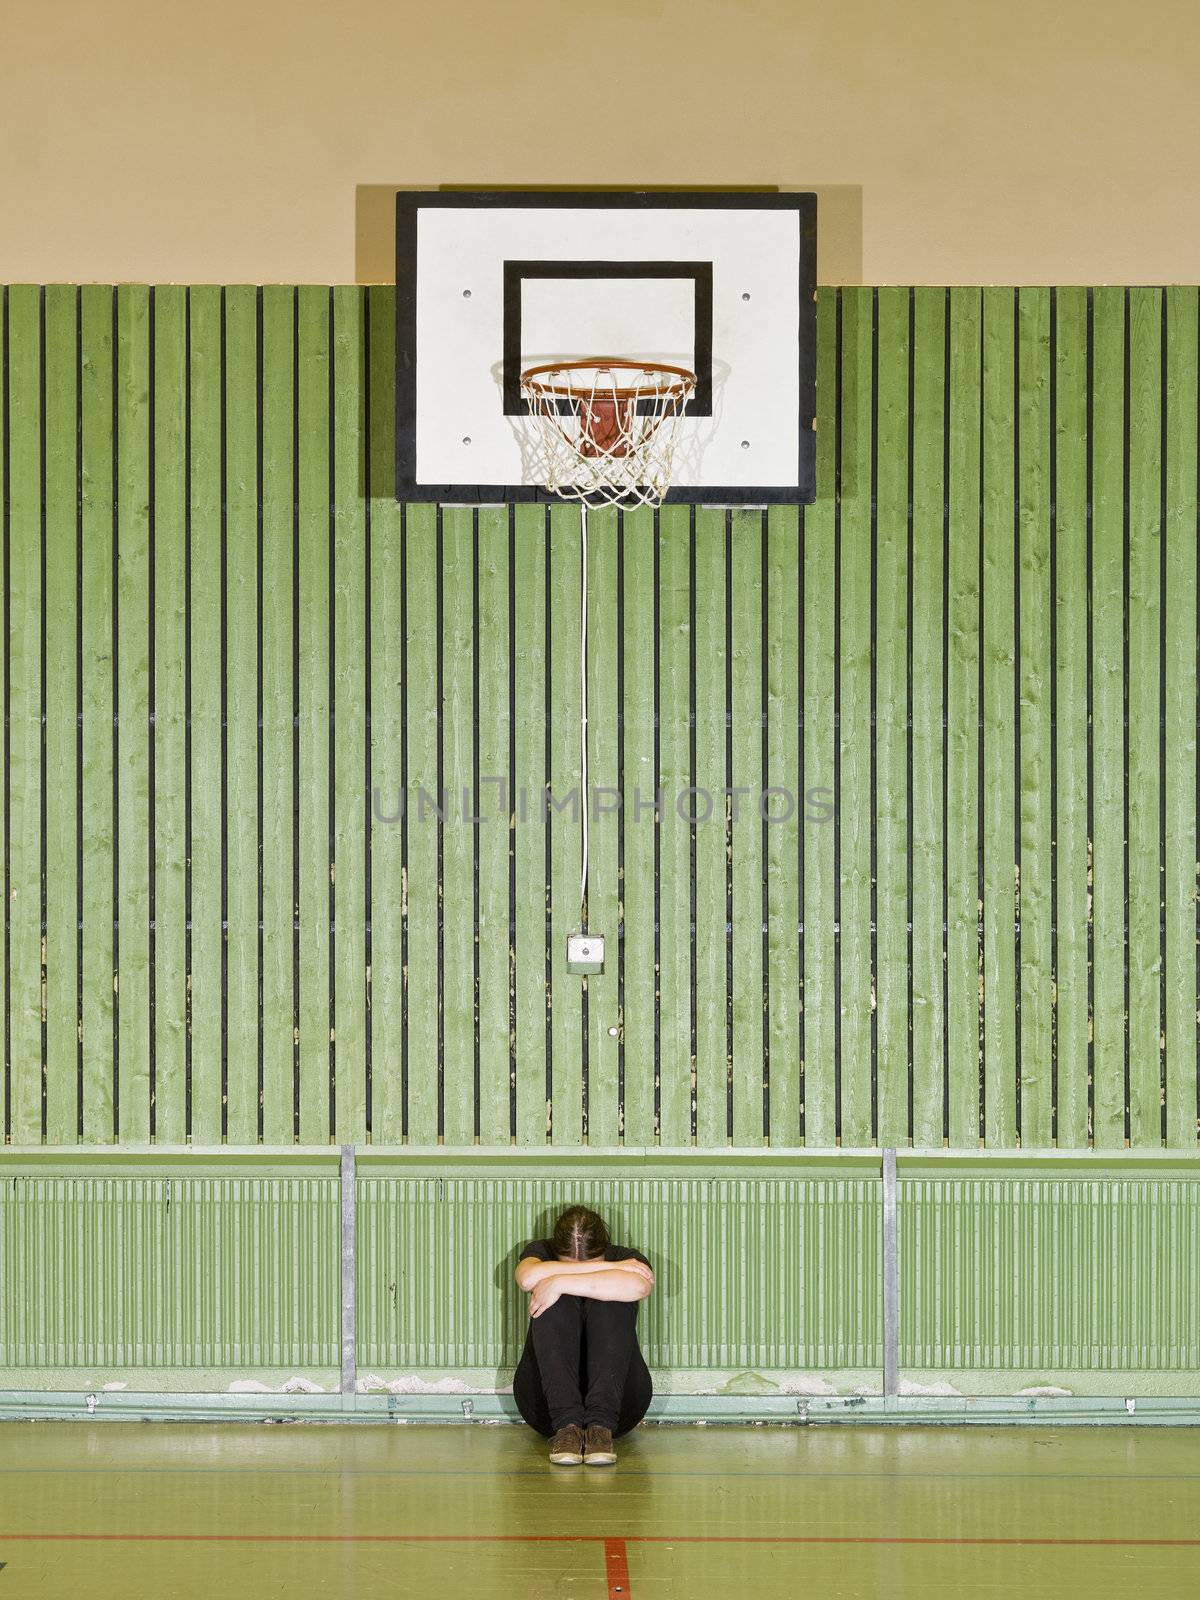 Sad girl sitting under a basket hoop